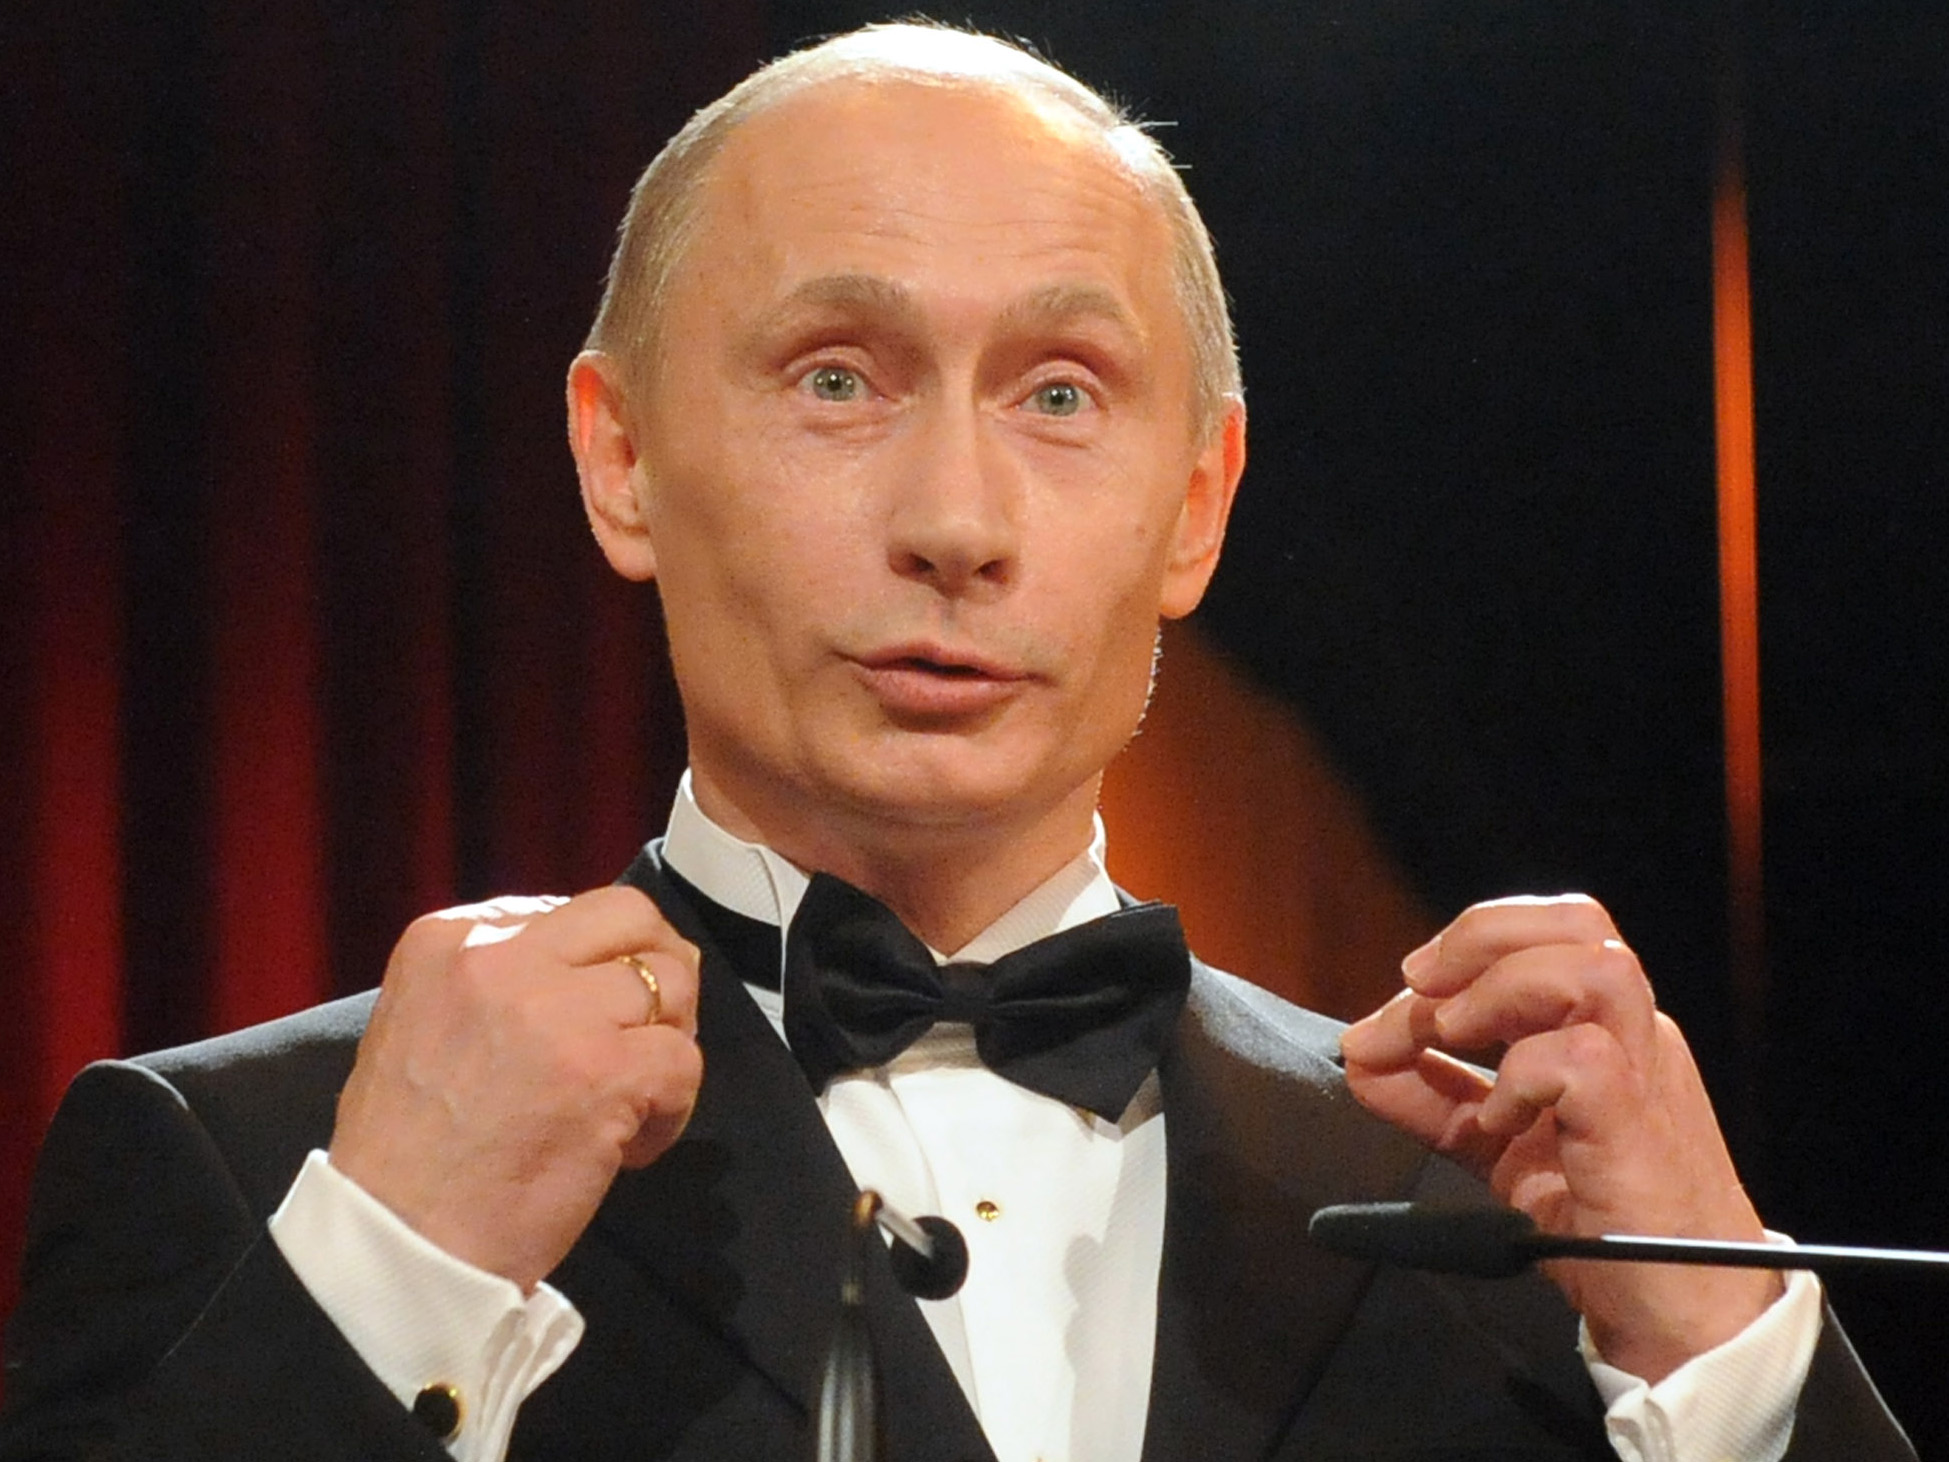 ITAR-TASS 13: DRESDEN, GERMANY. JANUARY 17. Russian Prime Minister Vladimir Putin speaks at a ceremony at the Semper Opera House where he was awarded "Order of Saxon Gratitude." (Photo ITAR-TASS / Grigory Sysoyev) 13. Ãåðìàíèÿ. Äðåçäåí. 17 ÿíâàðÿ. Ïðåìüåð-ìèíèñòð Ðîññèè Âëàäèìèð Ïóòèí âî âðåìÿ âûñòóïëåíèÿ íà öåðåìîíèè íàãðàæäåíèÿ "Ñàêñîíñêèì îðäåíîì áëàãîäàðíîñòè" â çäàíèè Äðåçäåíñêîé îïåðû. Ôîòî ÈÒÀÐ-ÒÀÑÑ/ Ãðèãîðèé Ñûñîåâ